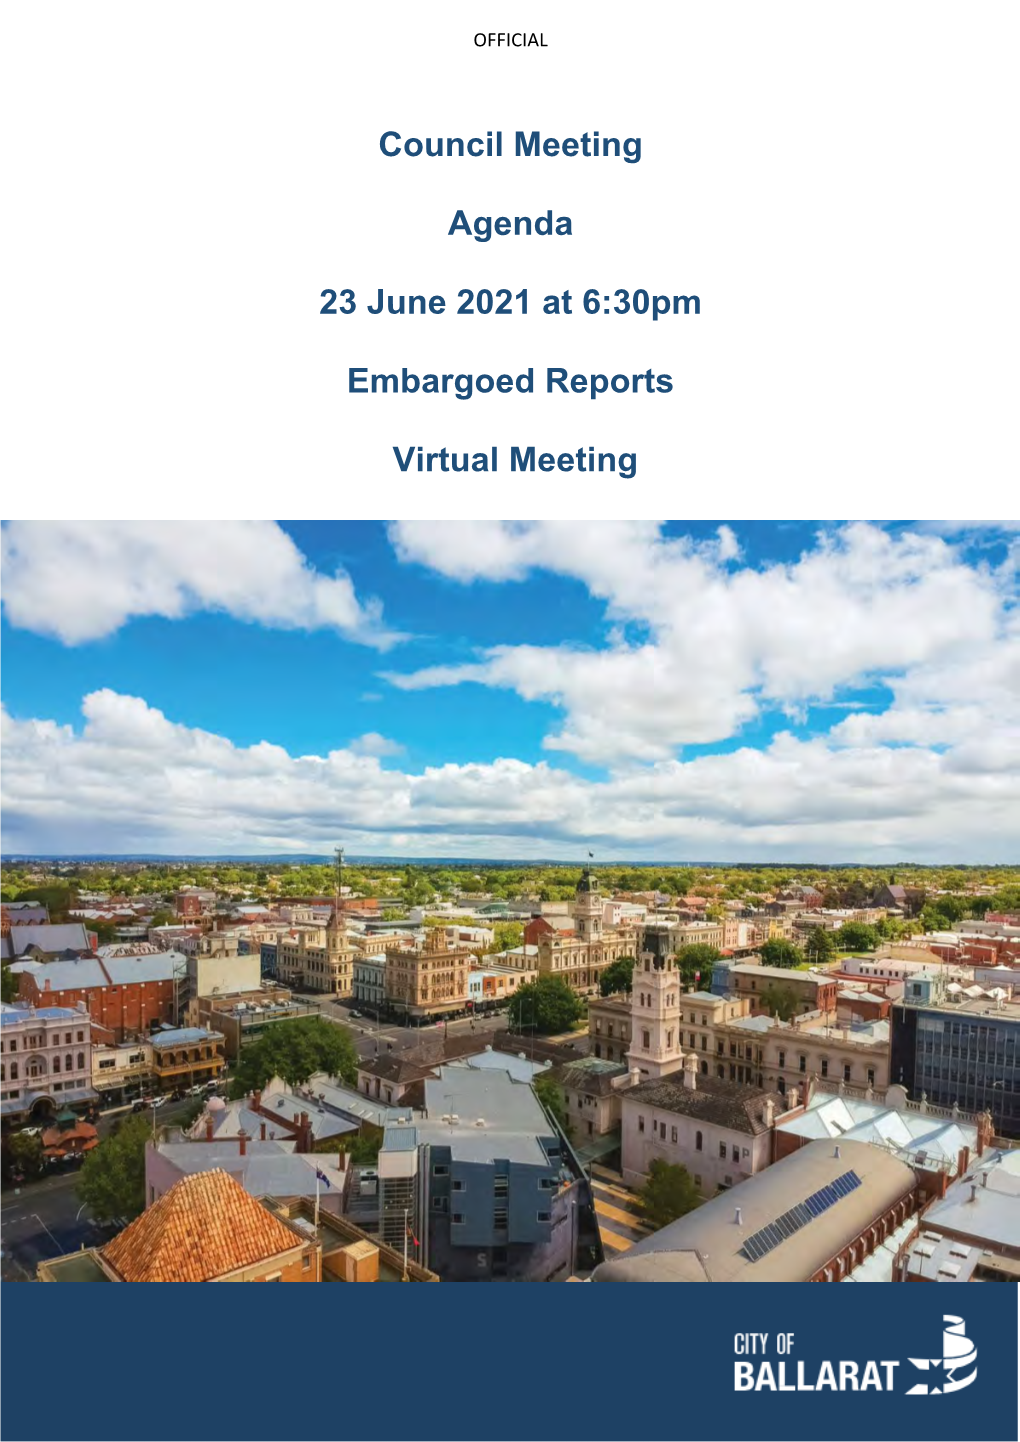 Council Meeting Agenda 23 June 2021 at 6:30Pm Embargoed